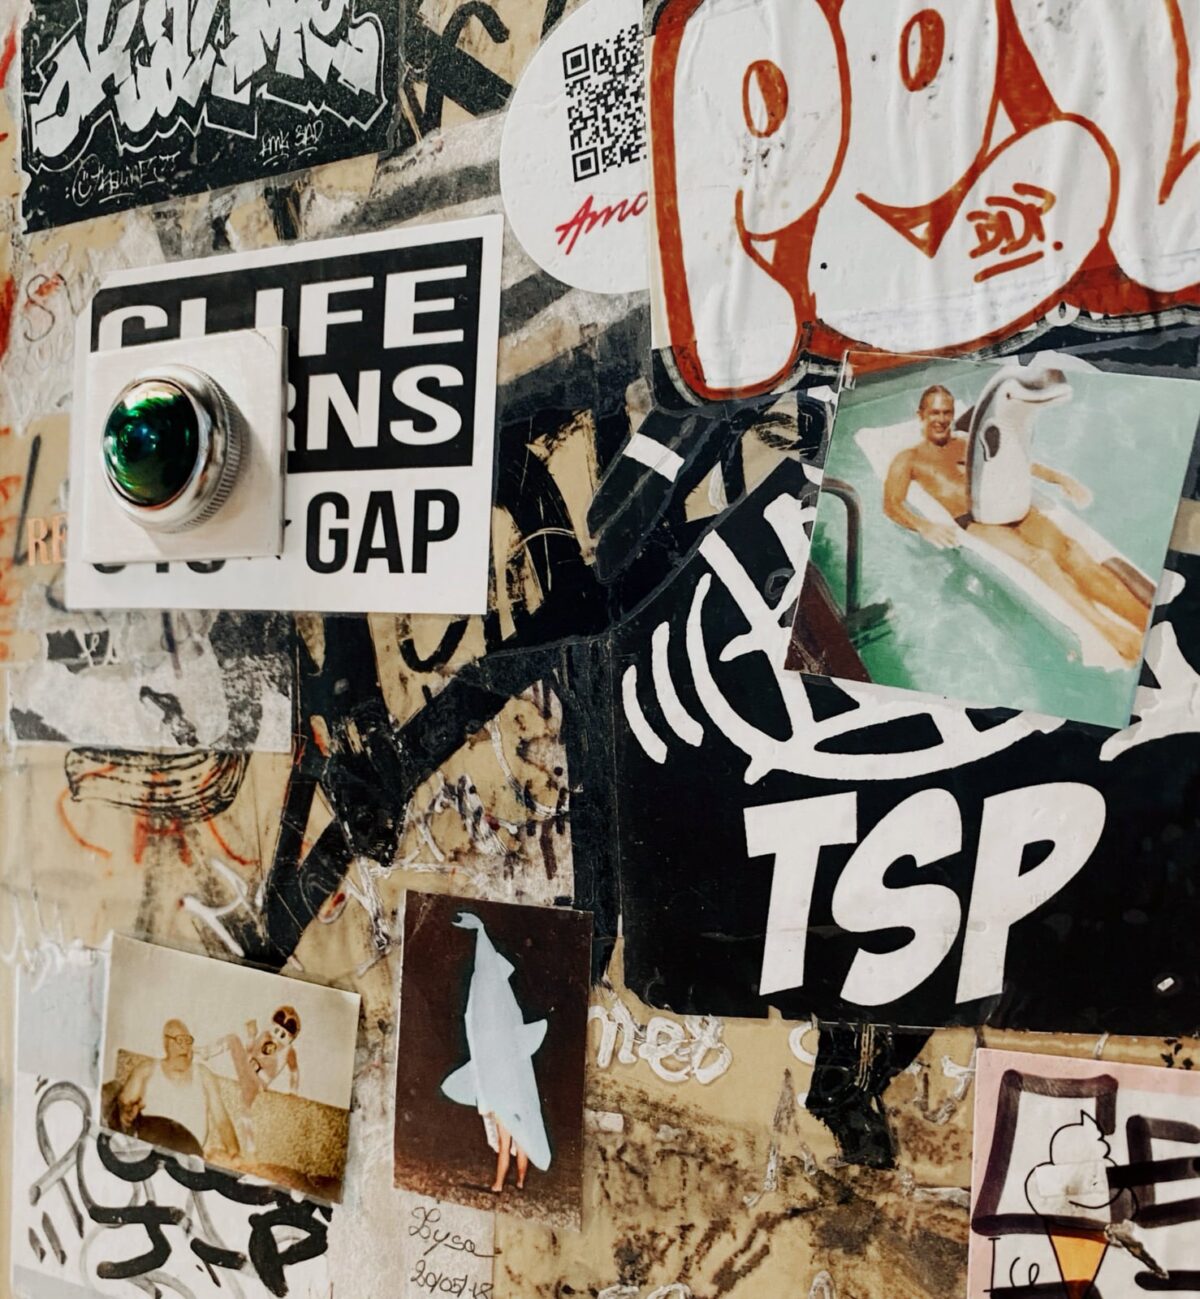 stickers et graffitis sur une cabine à photos